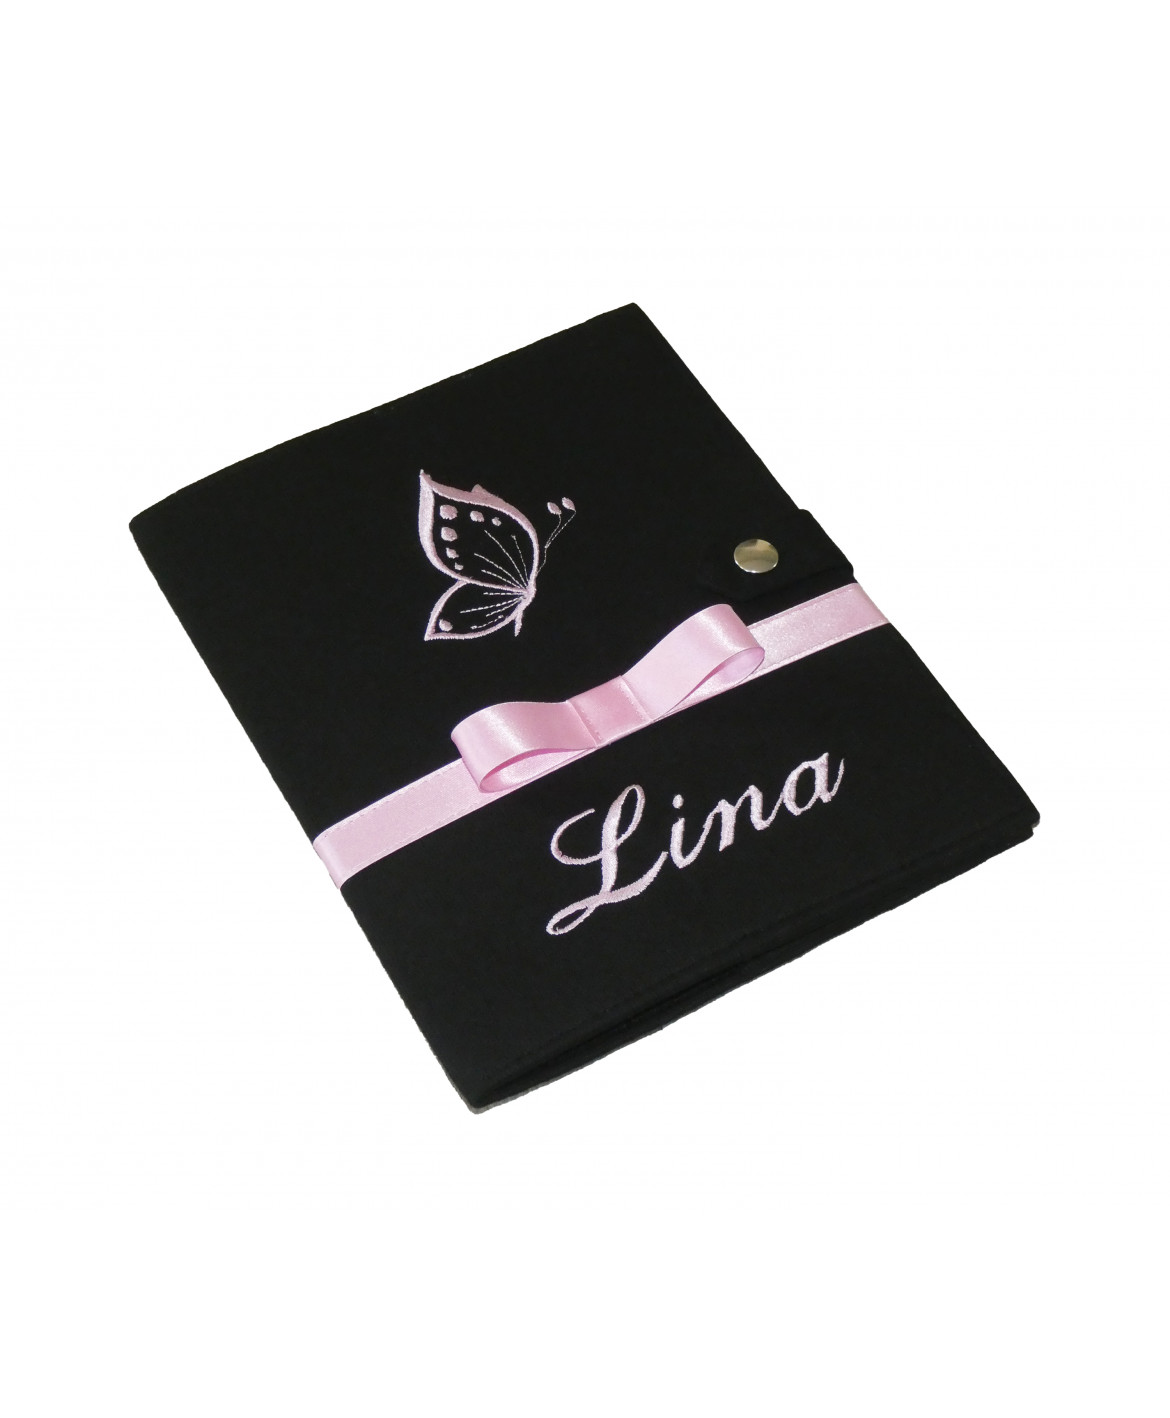 Protège carnet de santé rigide personnalisé noir - papillon rose - Cadeau de naissance fille personnalisé